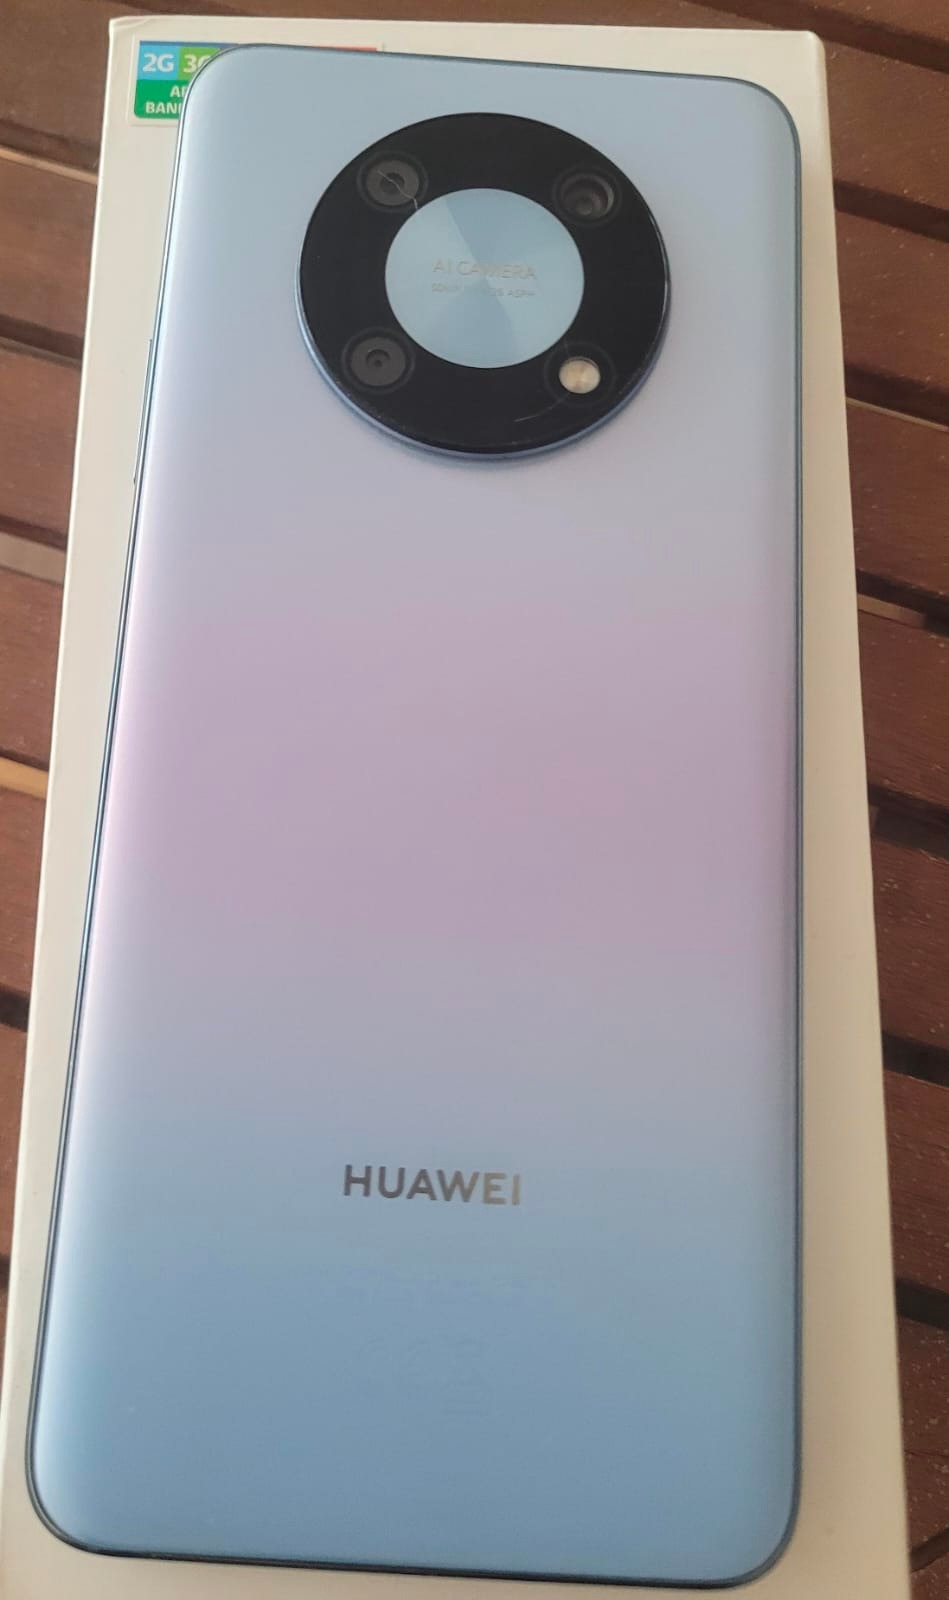 Celular Huawei Nova Y90, Color Azul Cristal, 6GB RAM